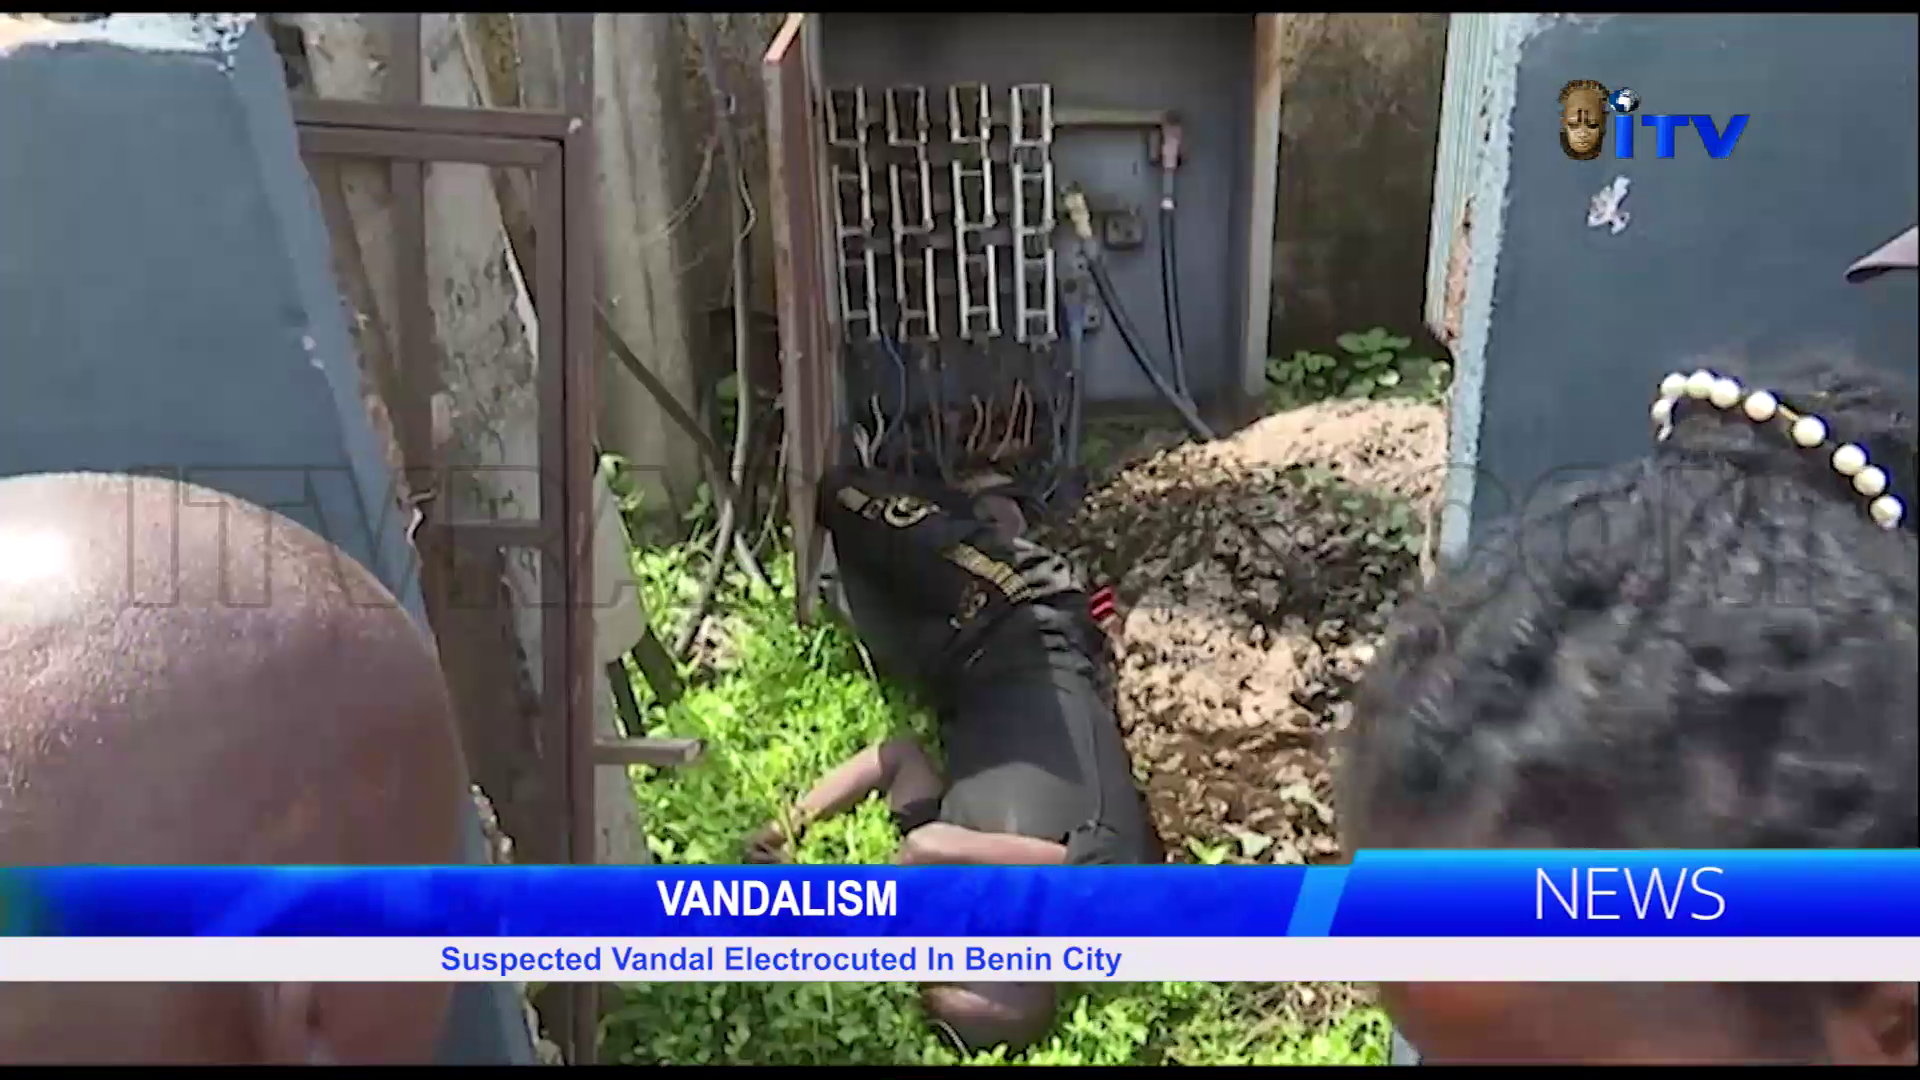 Vandalism: Suspected Vandal Electrocuted In Benin City